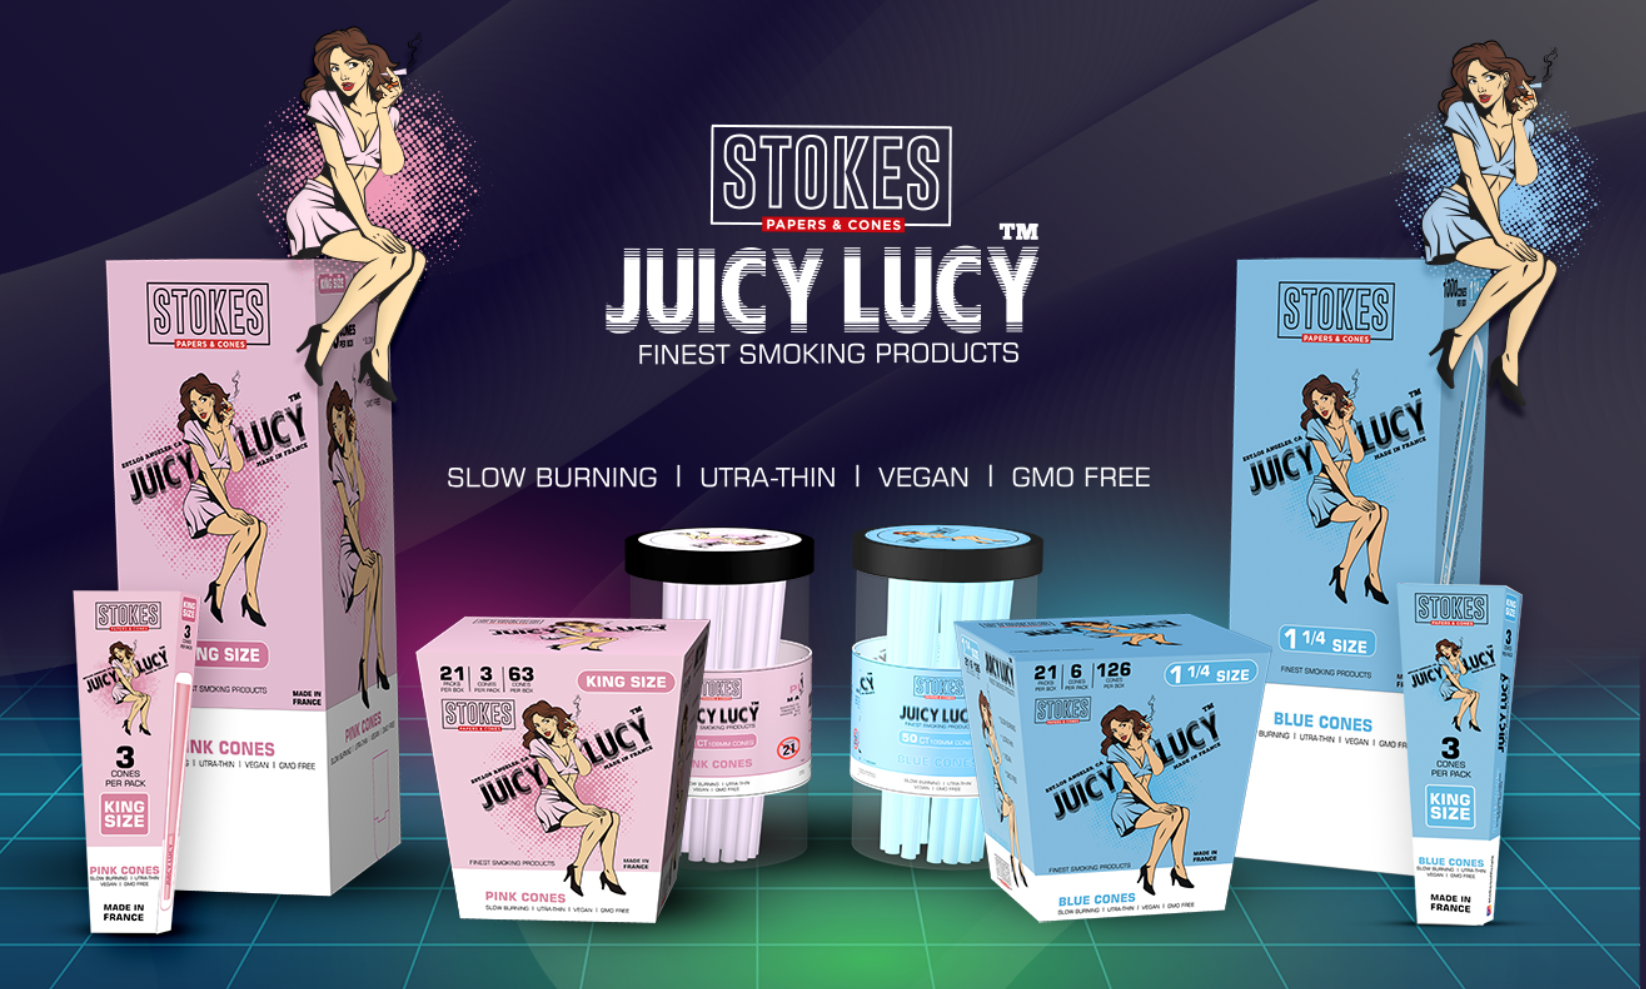 Juicy Lucy Pink Cones & Blue Cones!